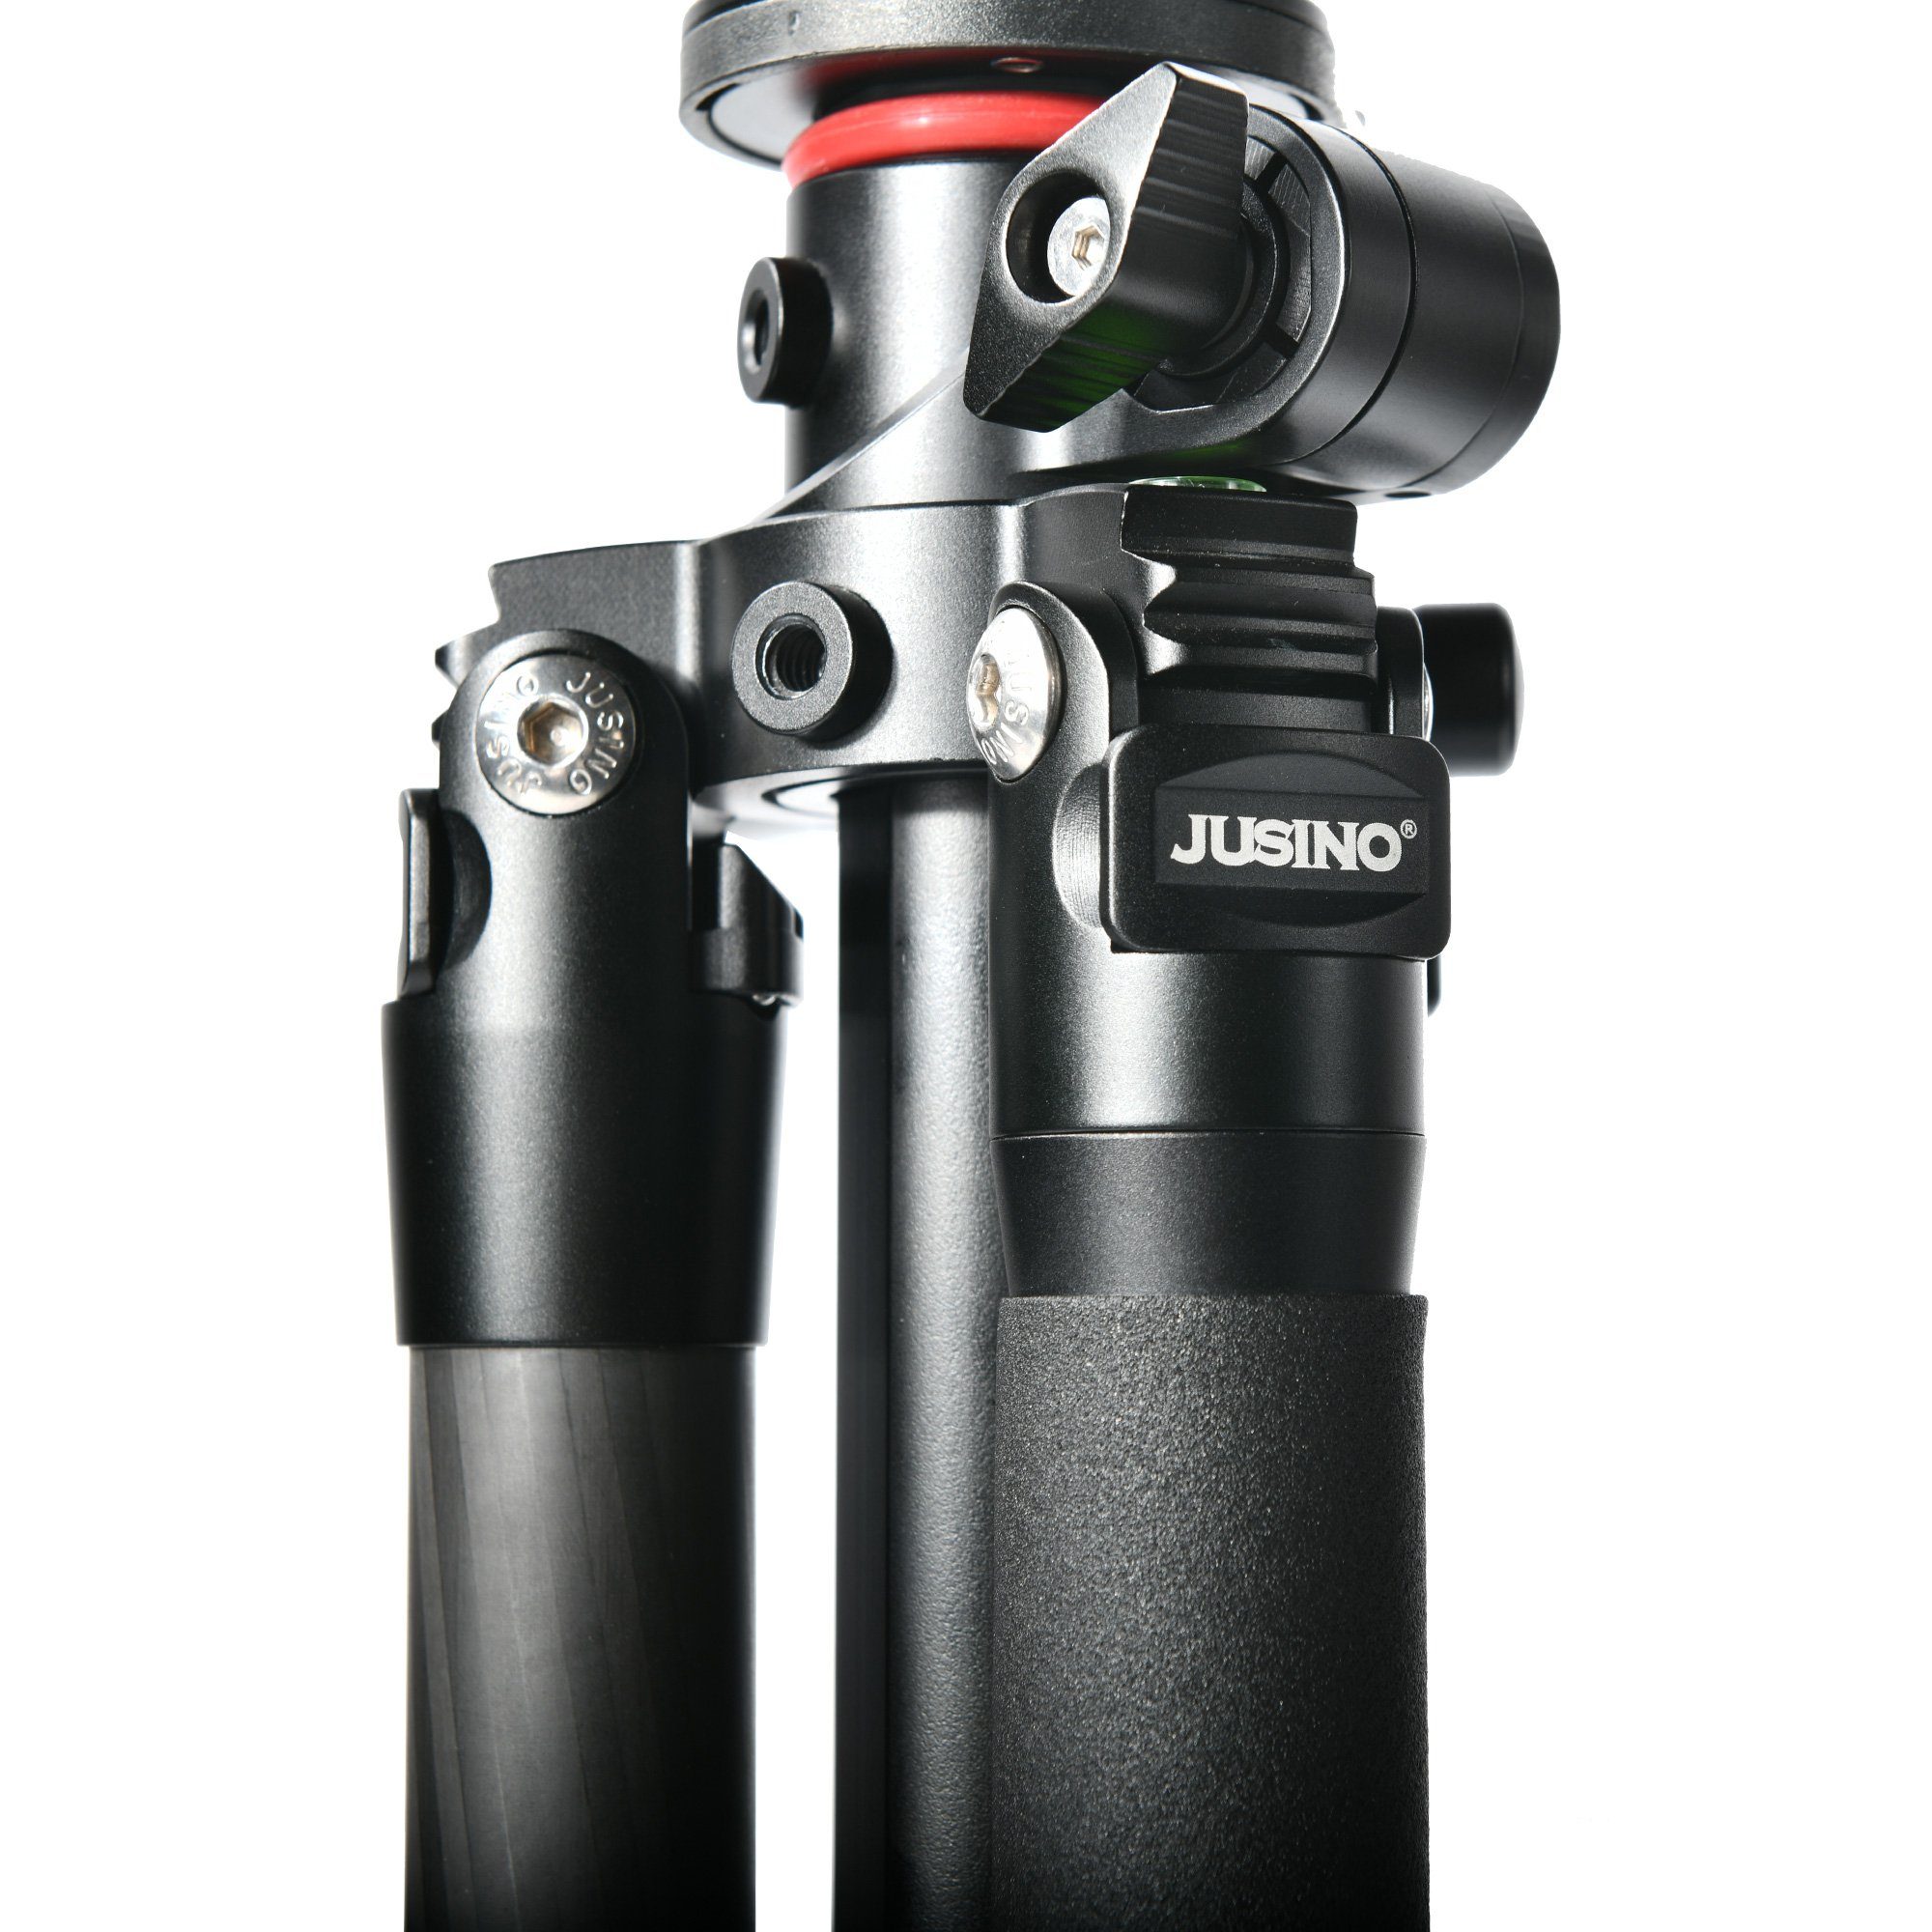 JUSINO GA-284C leichtes Karbon-Stativ 170cm Max flexible Höhe Dreibeinstativ Mittelsäule